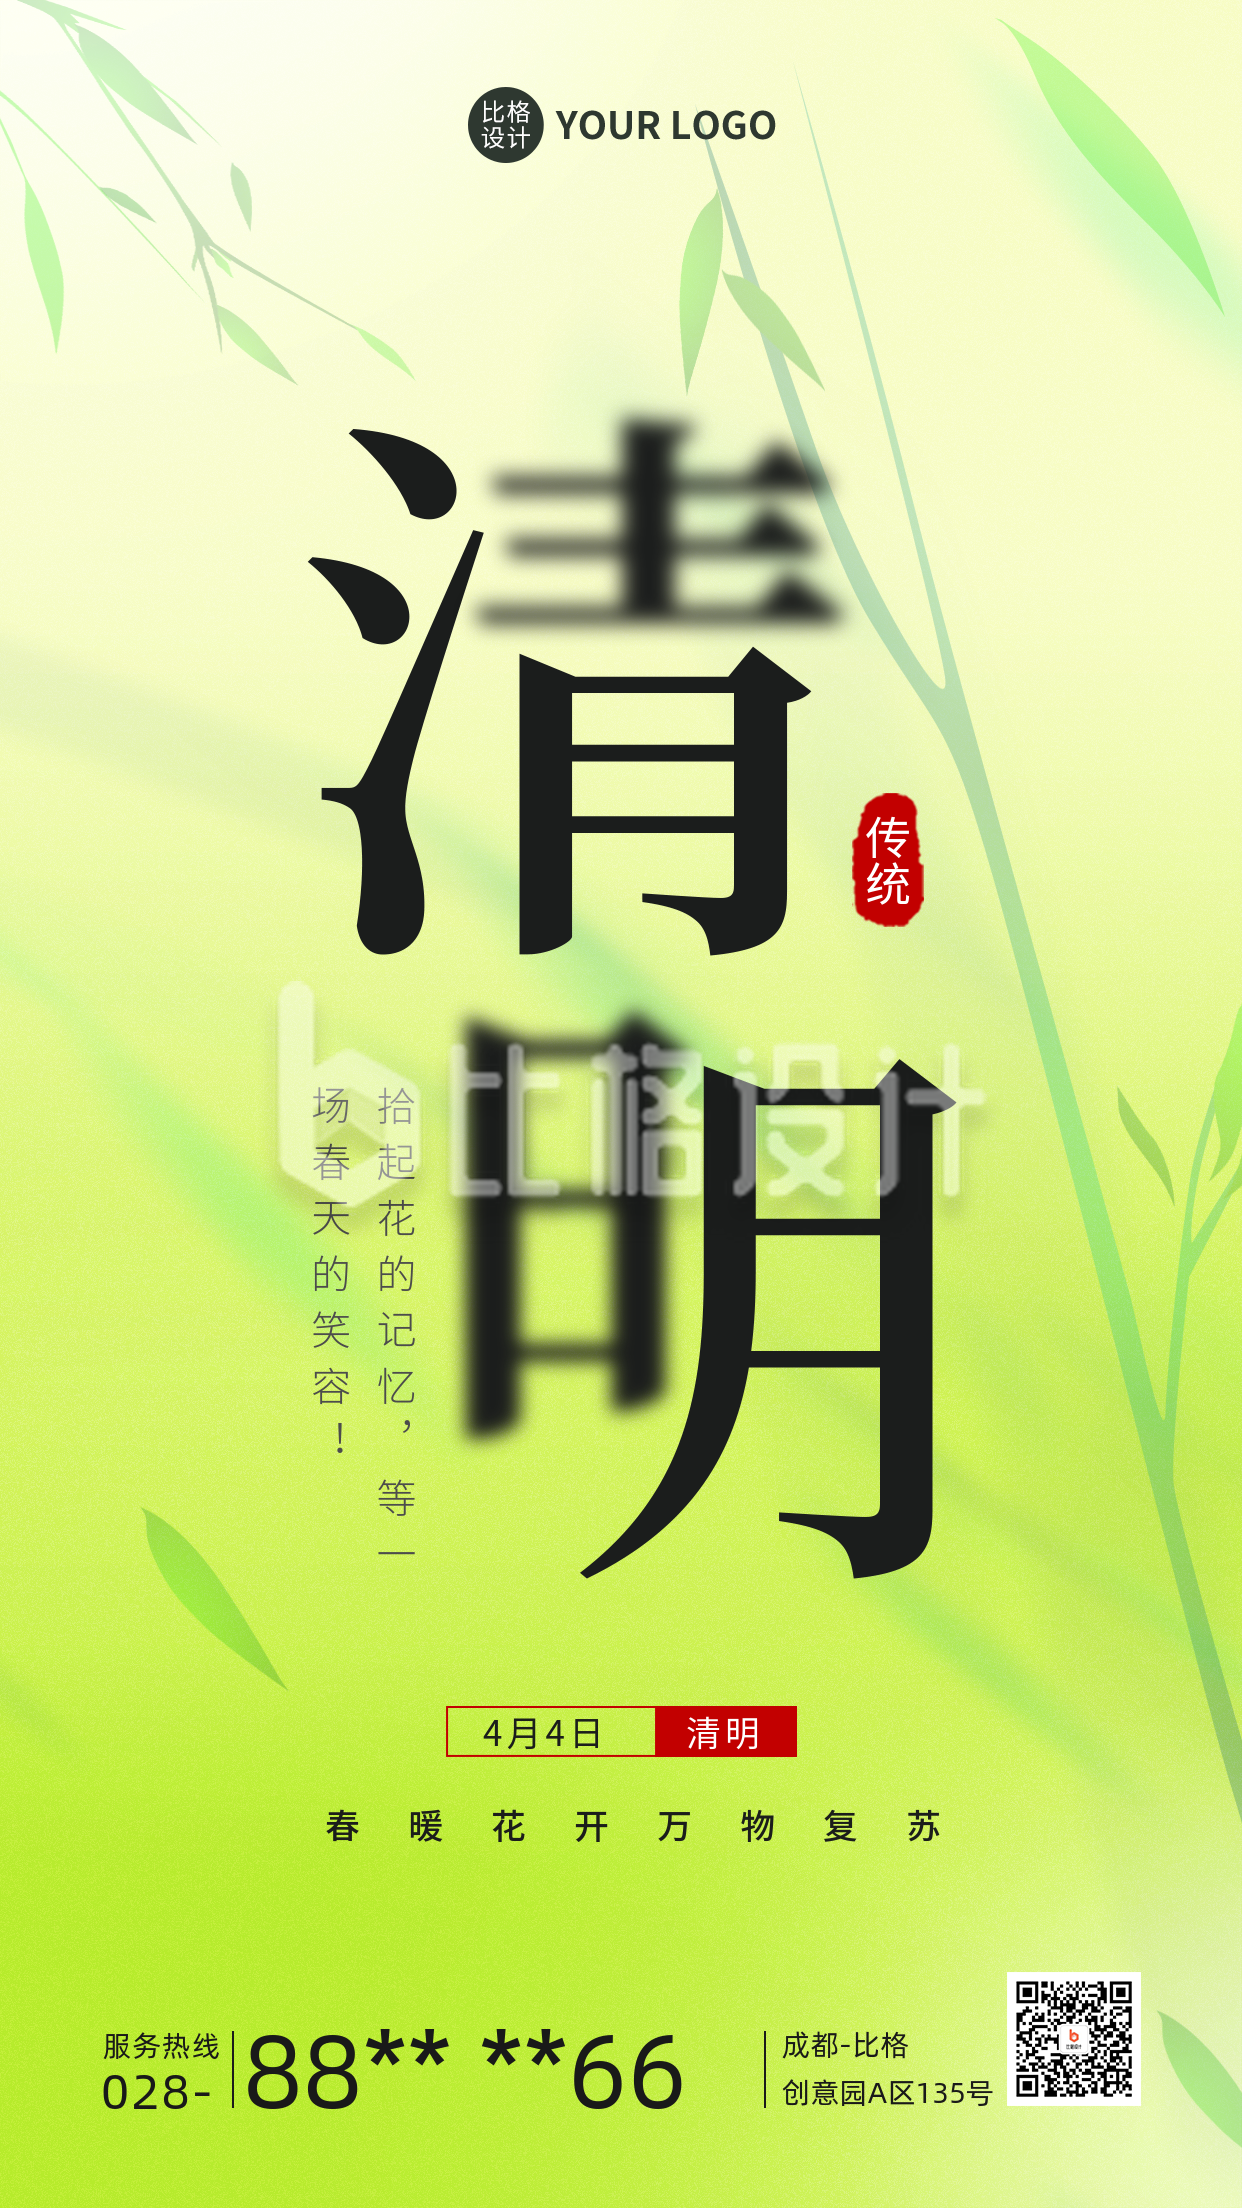 清明节传统节日手机海报